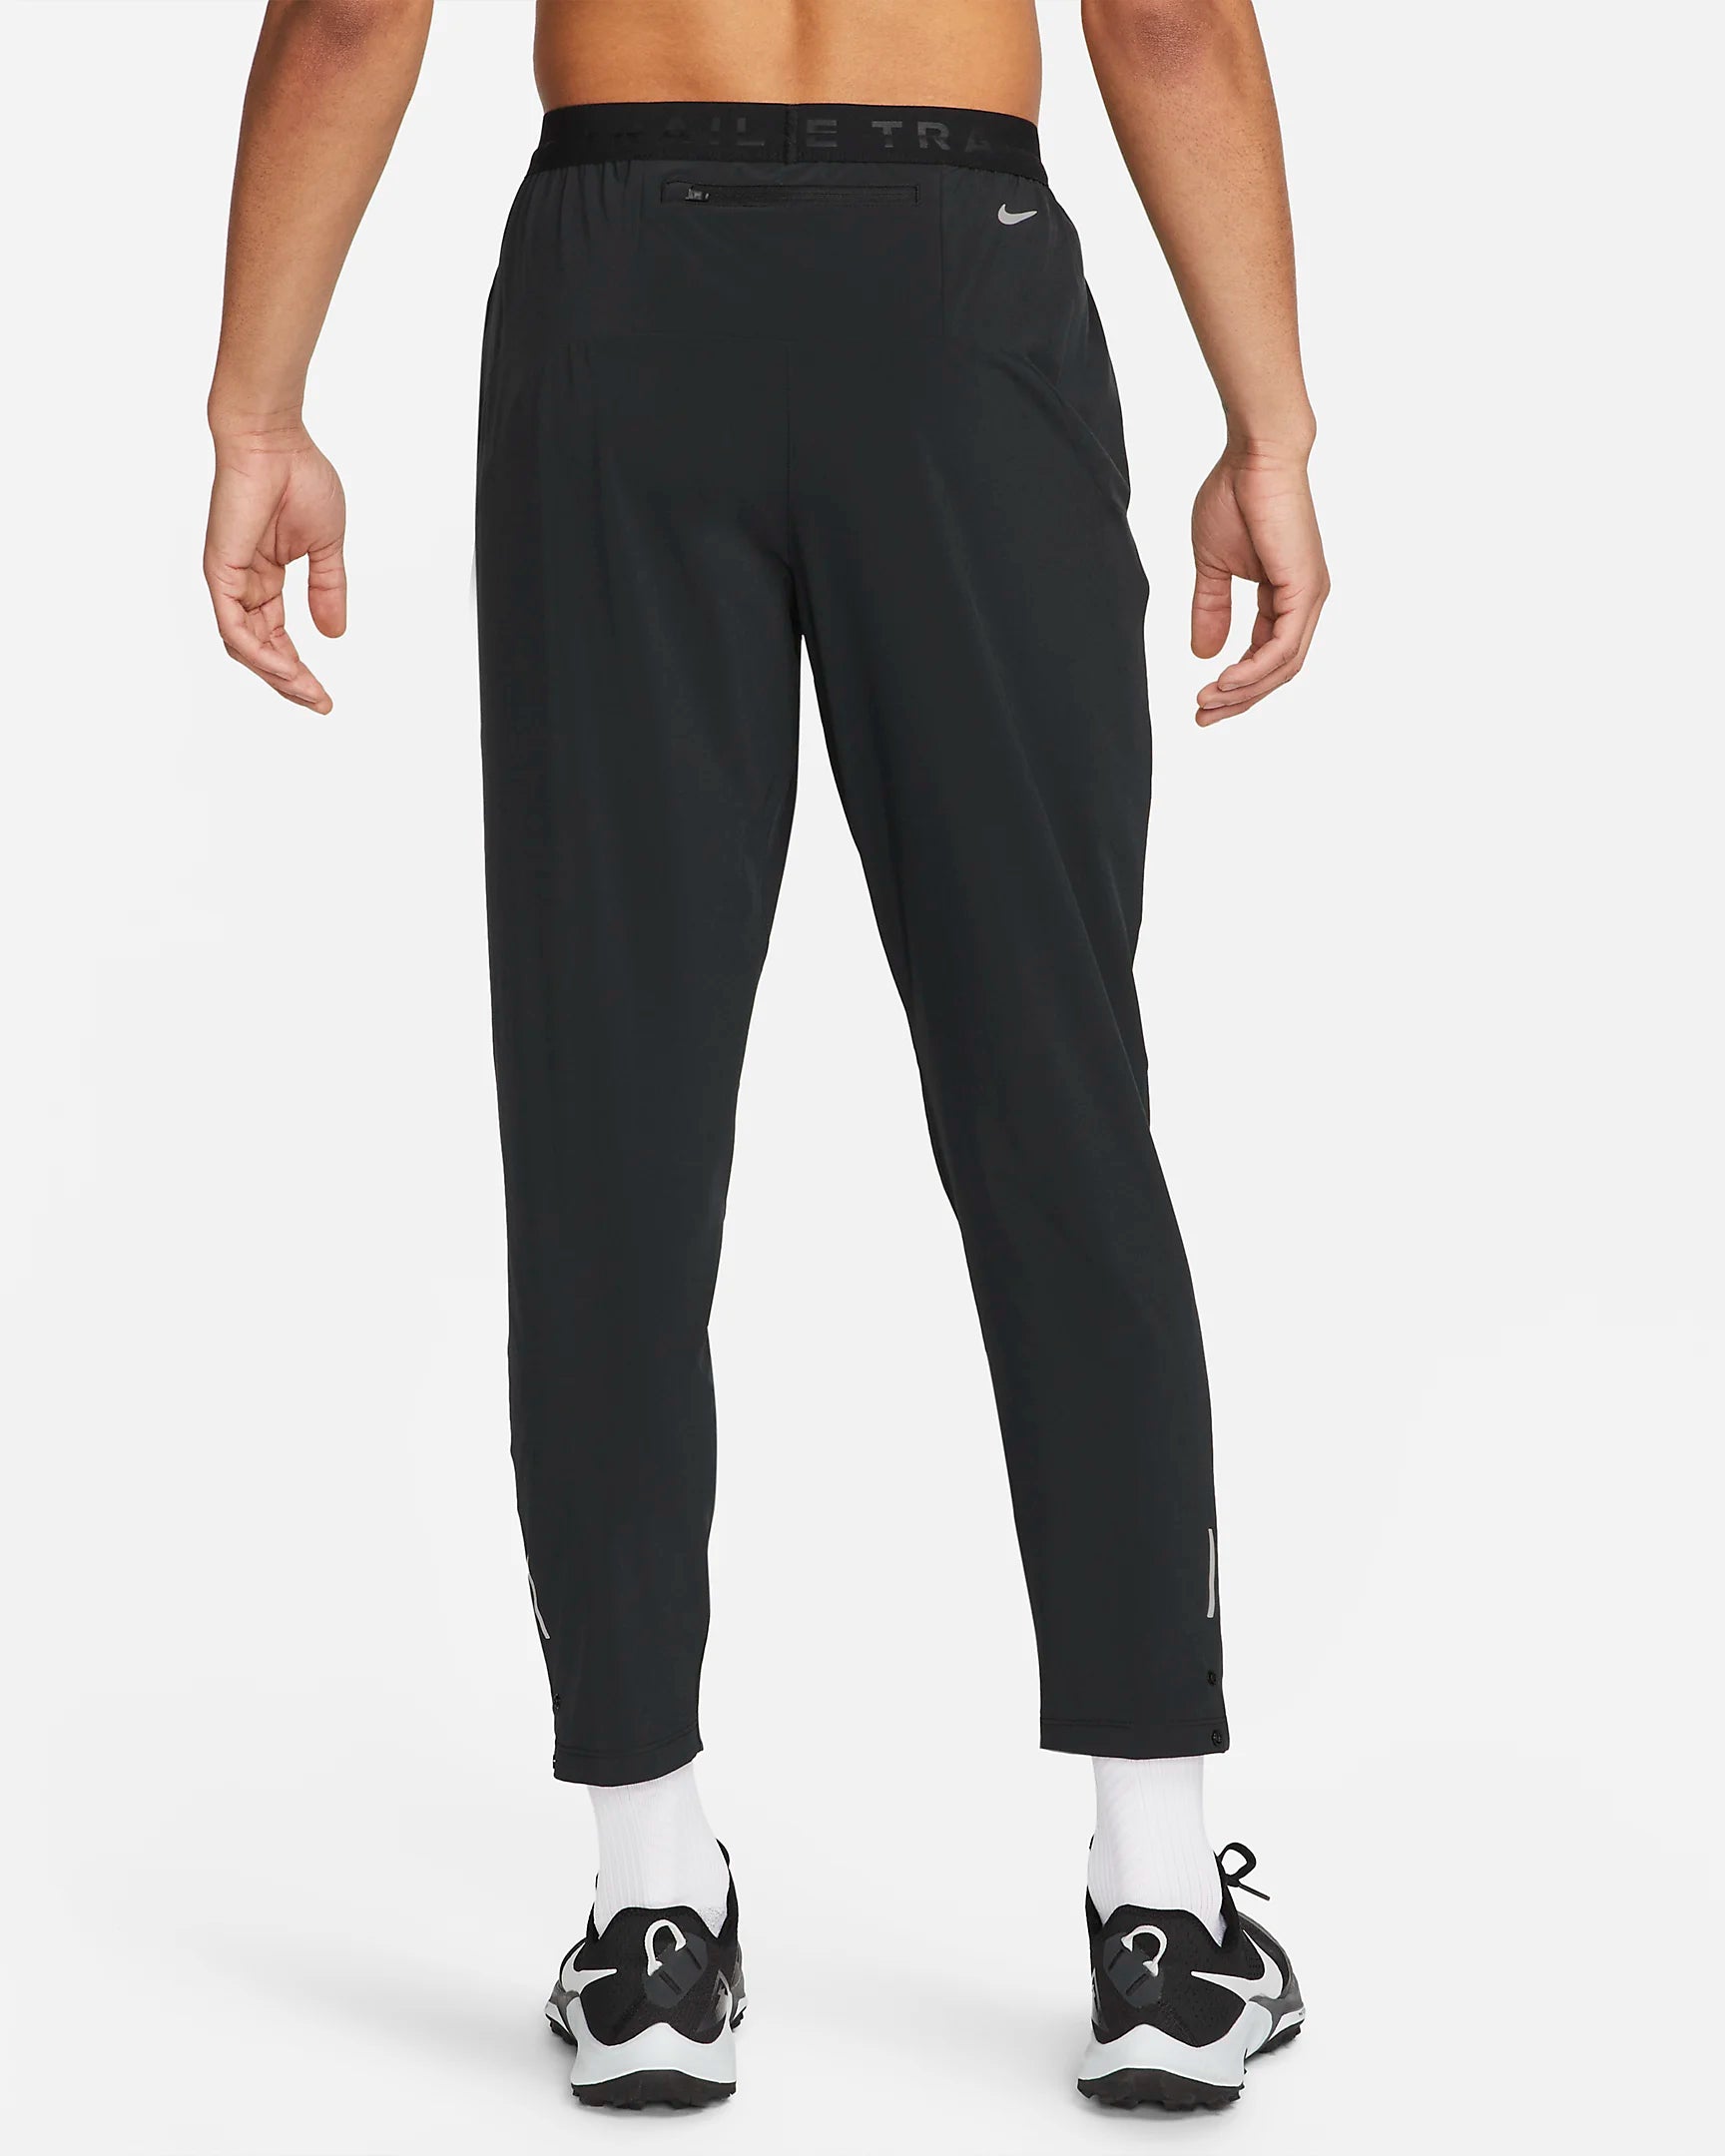 Pantaloni Nike Trail - neri